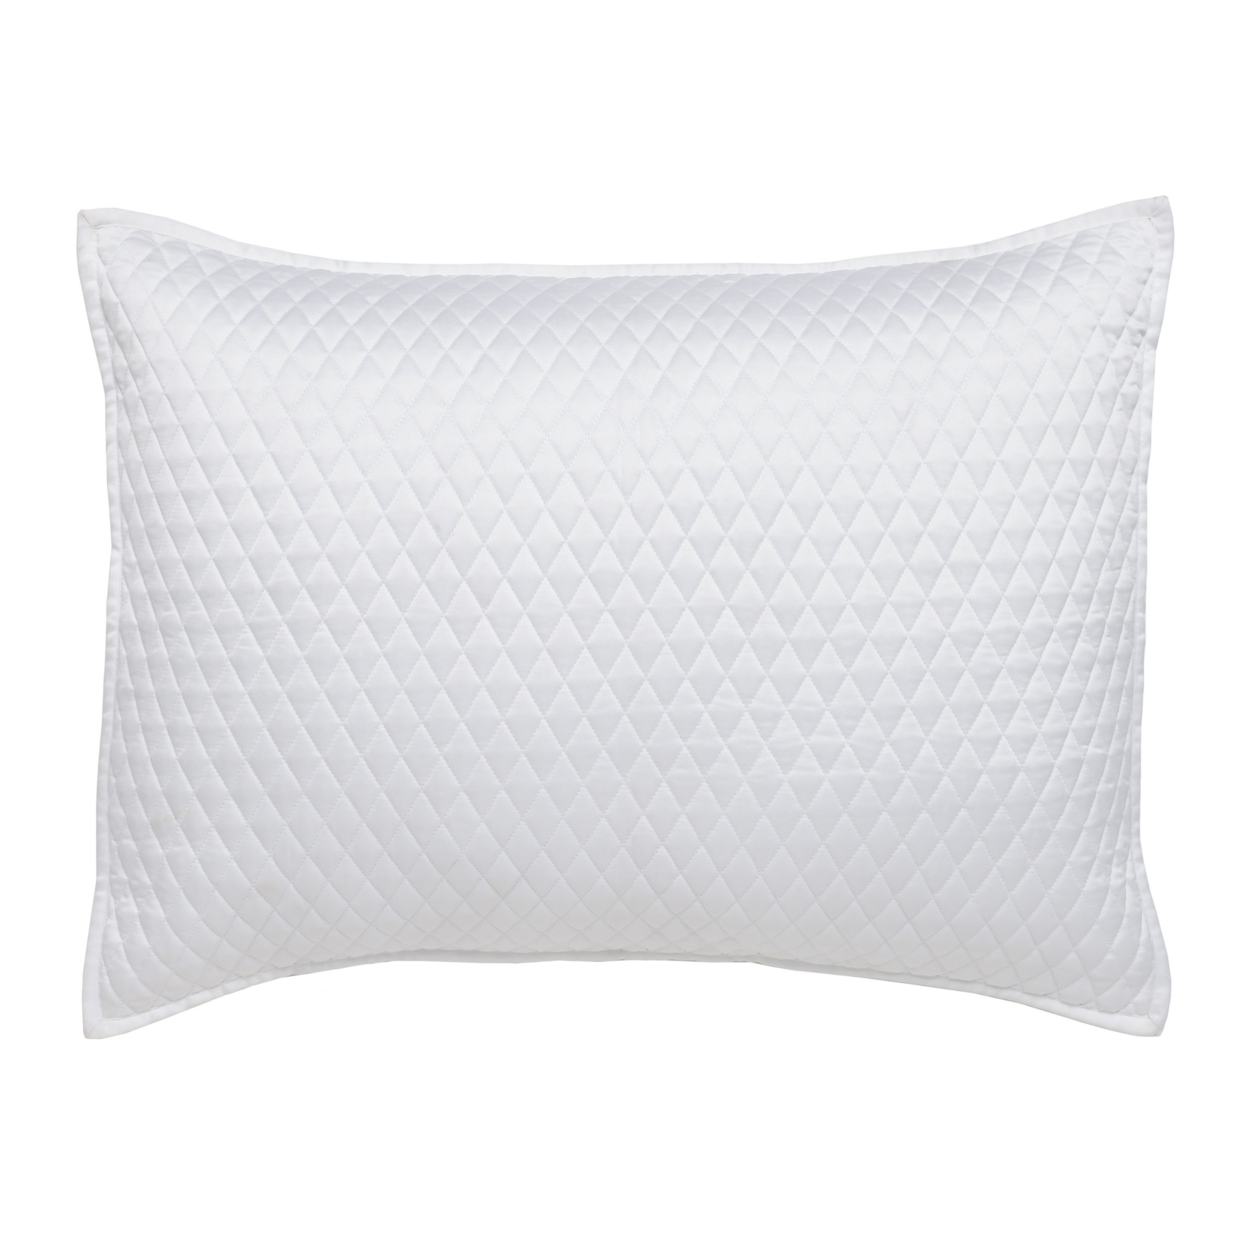 Kahn 26 Inch Hand Quilted Standard Pillow Sham, Mitered Corner, Matte White- Saltoro Sherpi